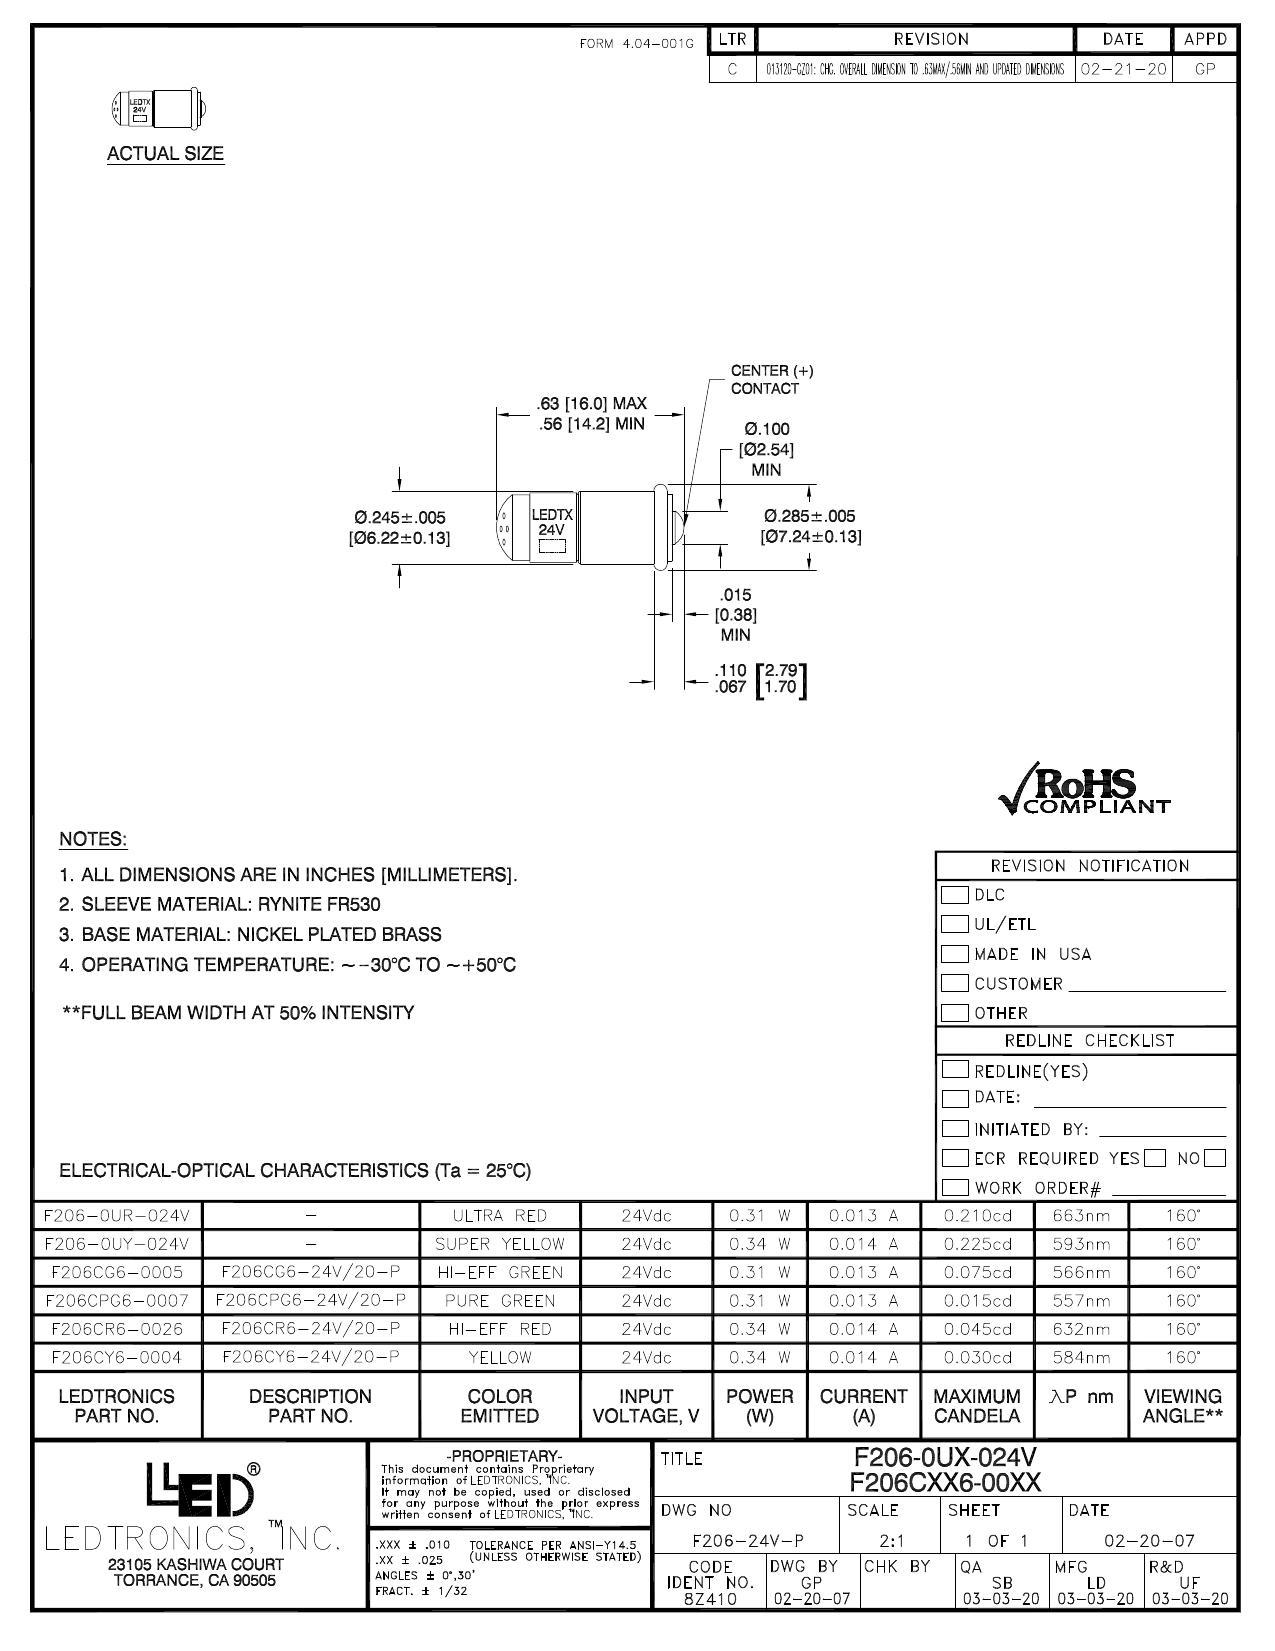 f206-oux-024v-led-datasheet.pdf